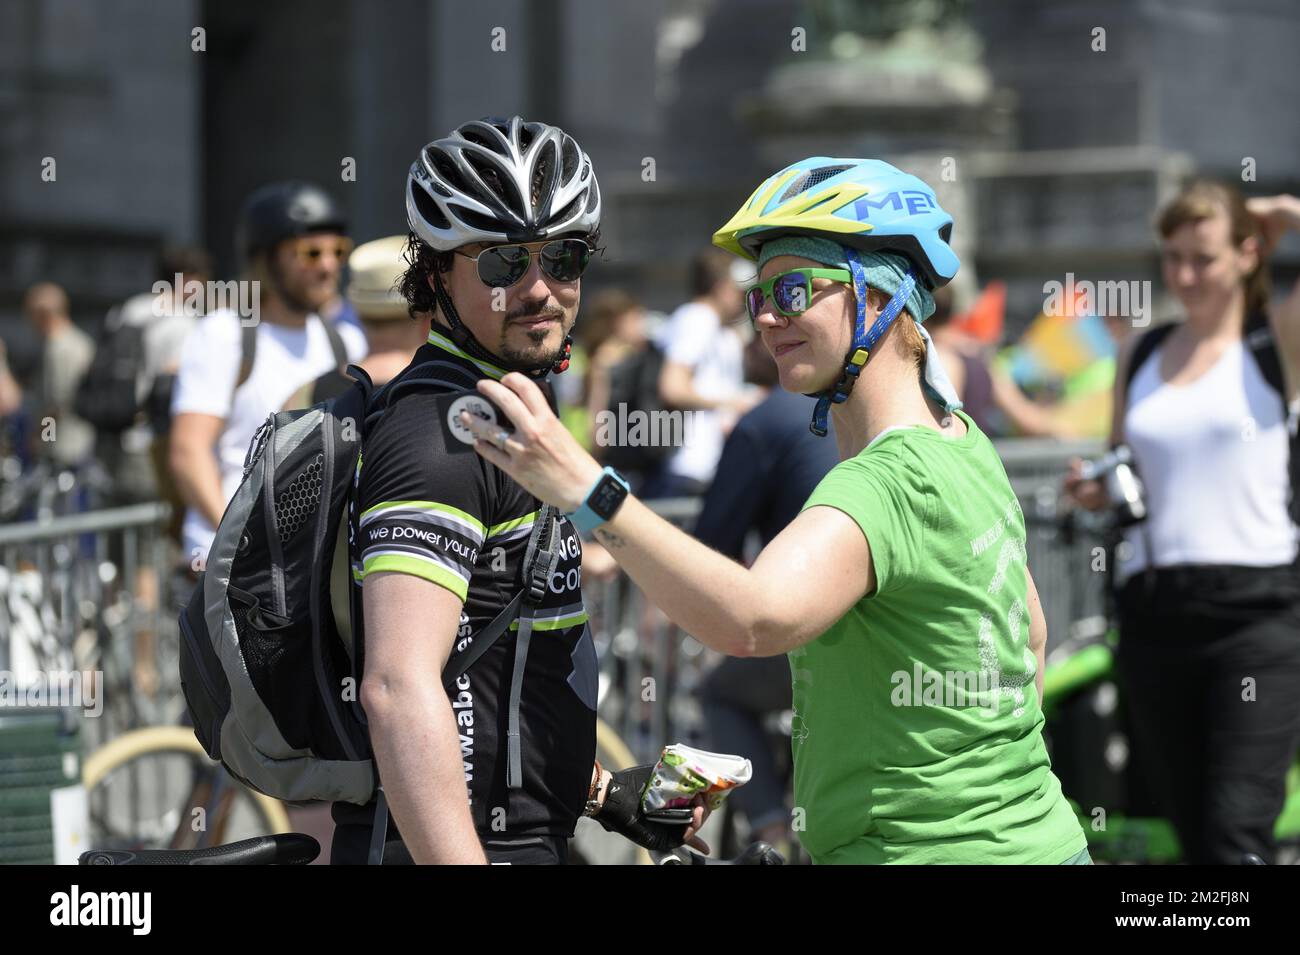 les cyclistes venus de touche la Belgique célébrent les 20 ans de la touche première masse critique de la capitale. Le peloton se retouve dans le parc du Cinquantenaire | dans le Parc du jubileum; le cycliste assure les 20 ans de commémoration critique de masse. 26/05/2018 Banque D'Images